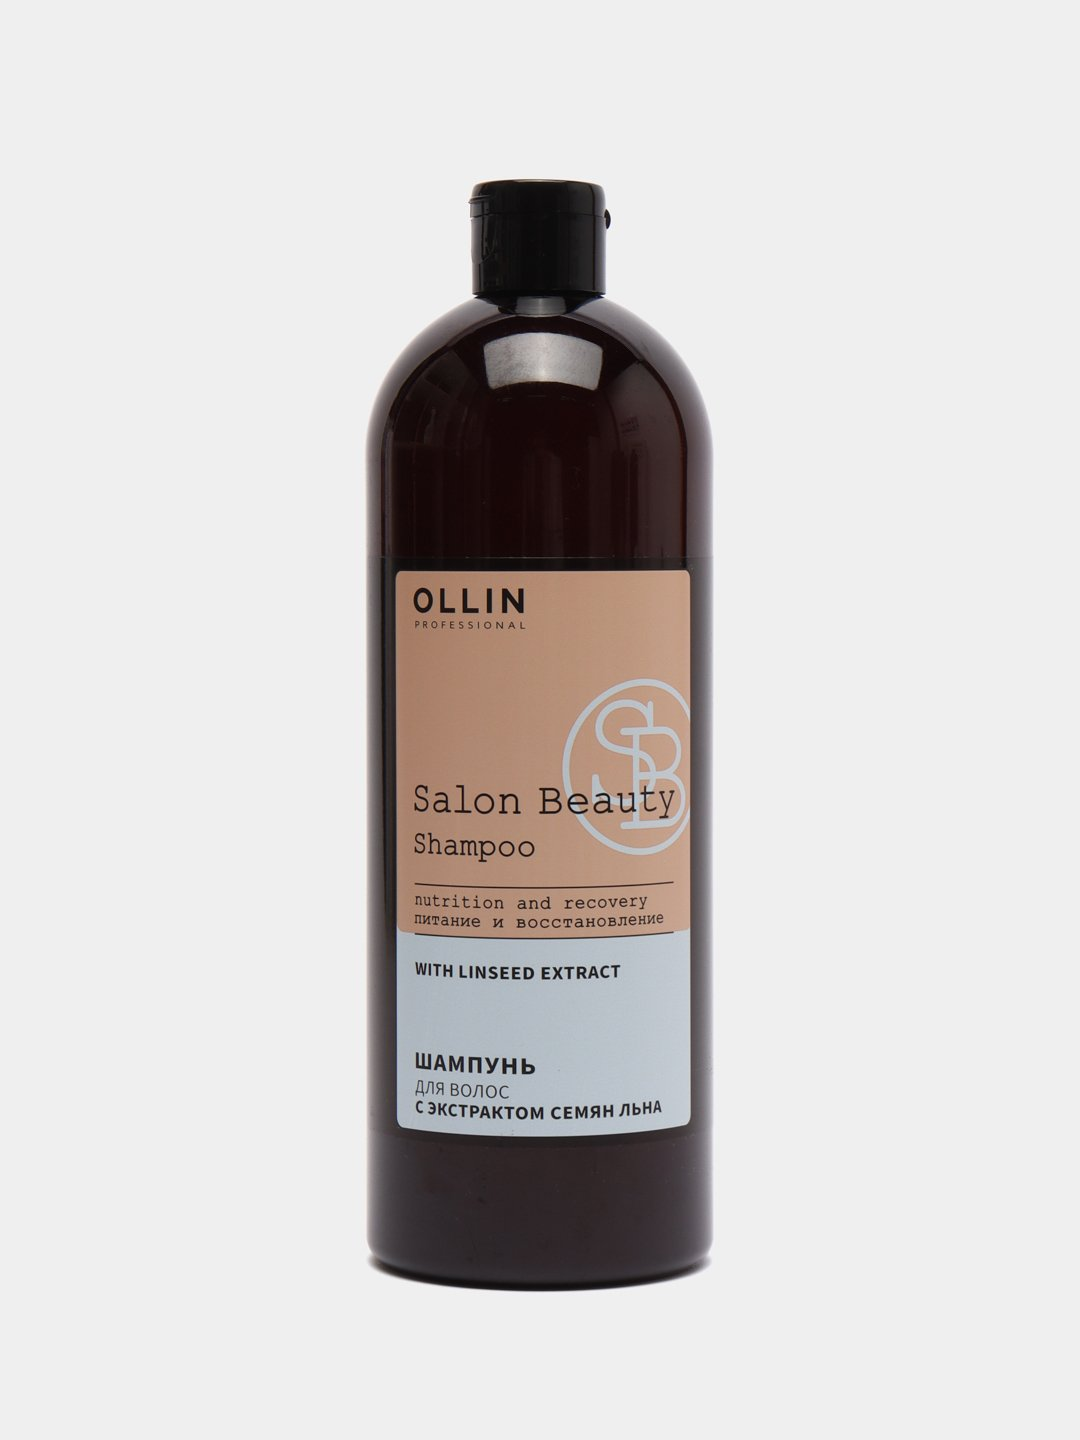 Шампунь для волос с экстрактом семян льна 1000 мл, Ollin Professional, Salon Beauty